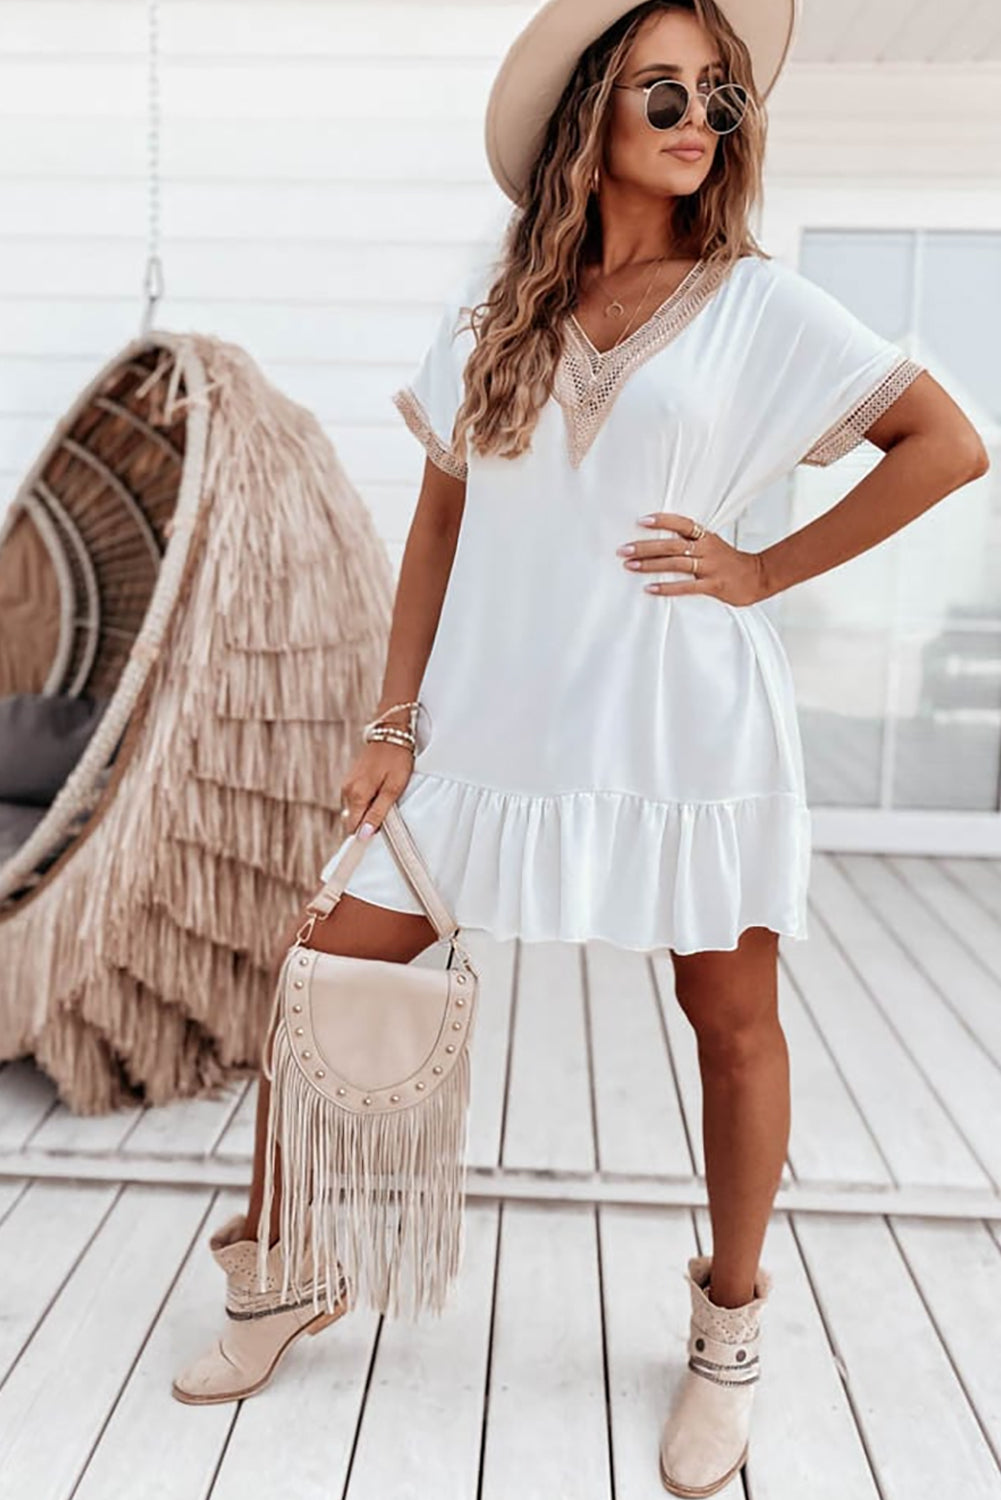 Mini-robe blanche à volants et manches courtes avec bordure en dentelle